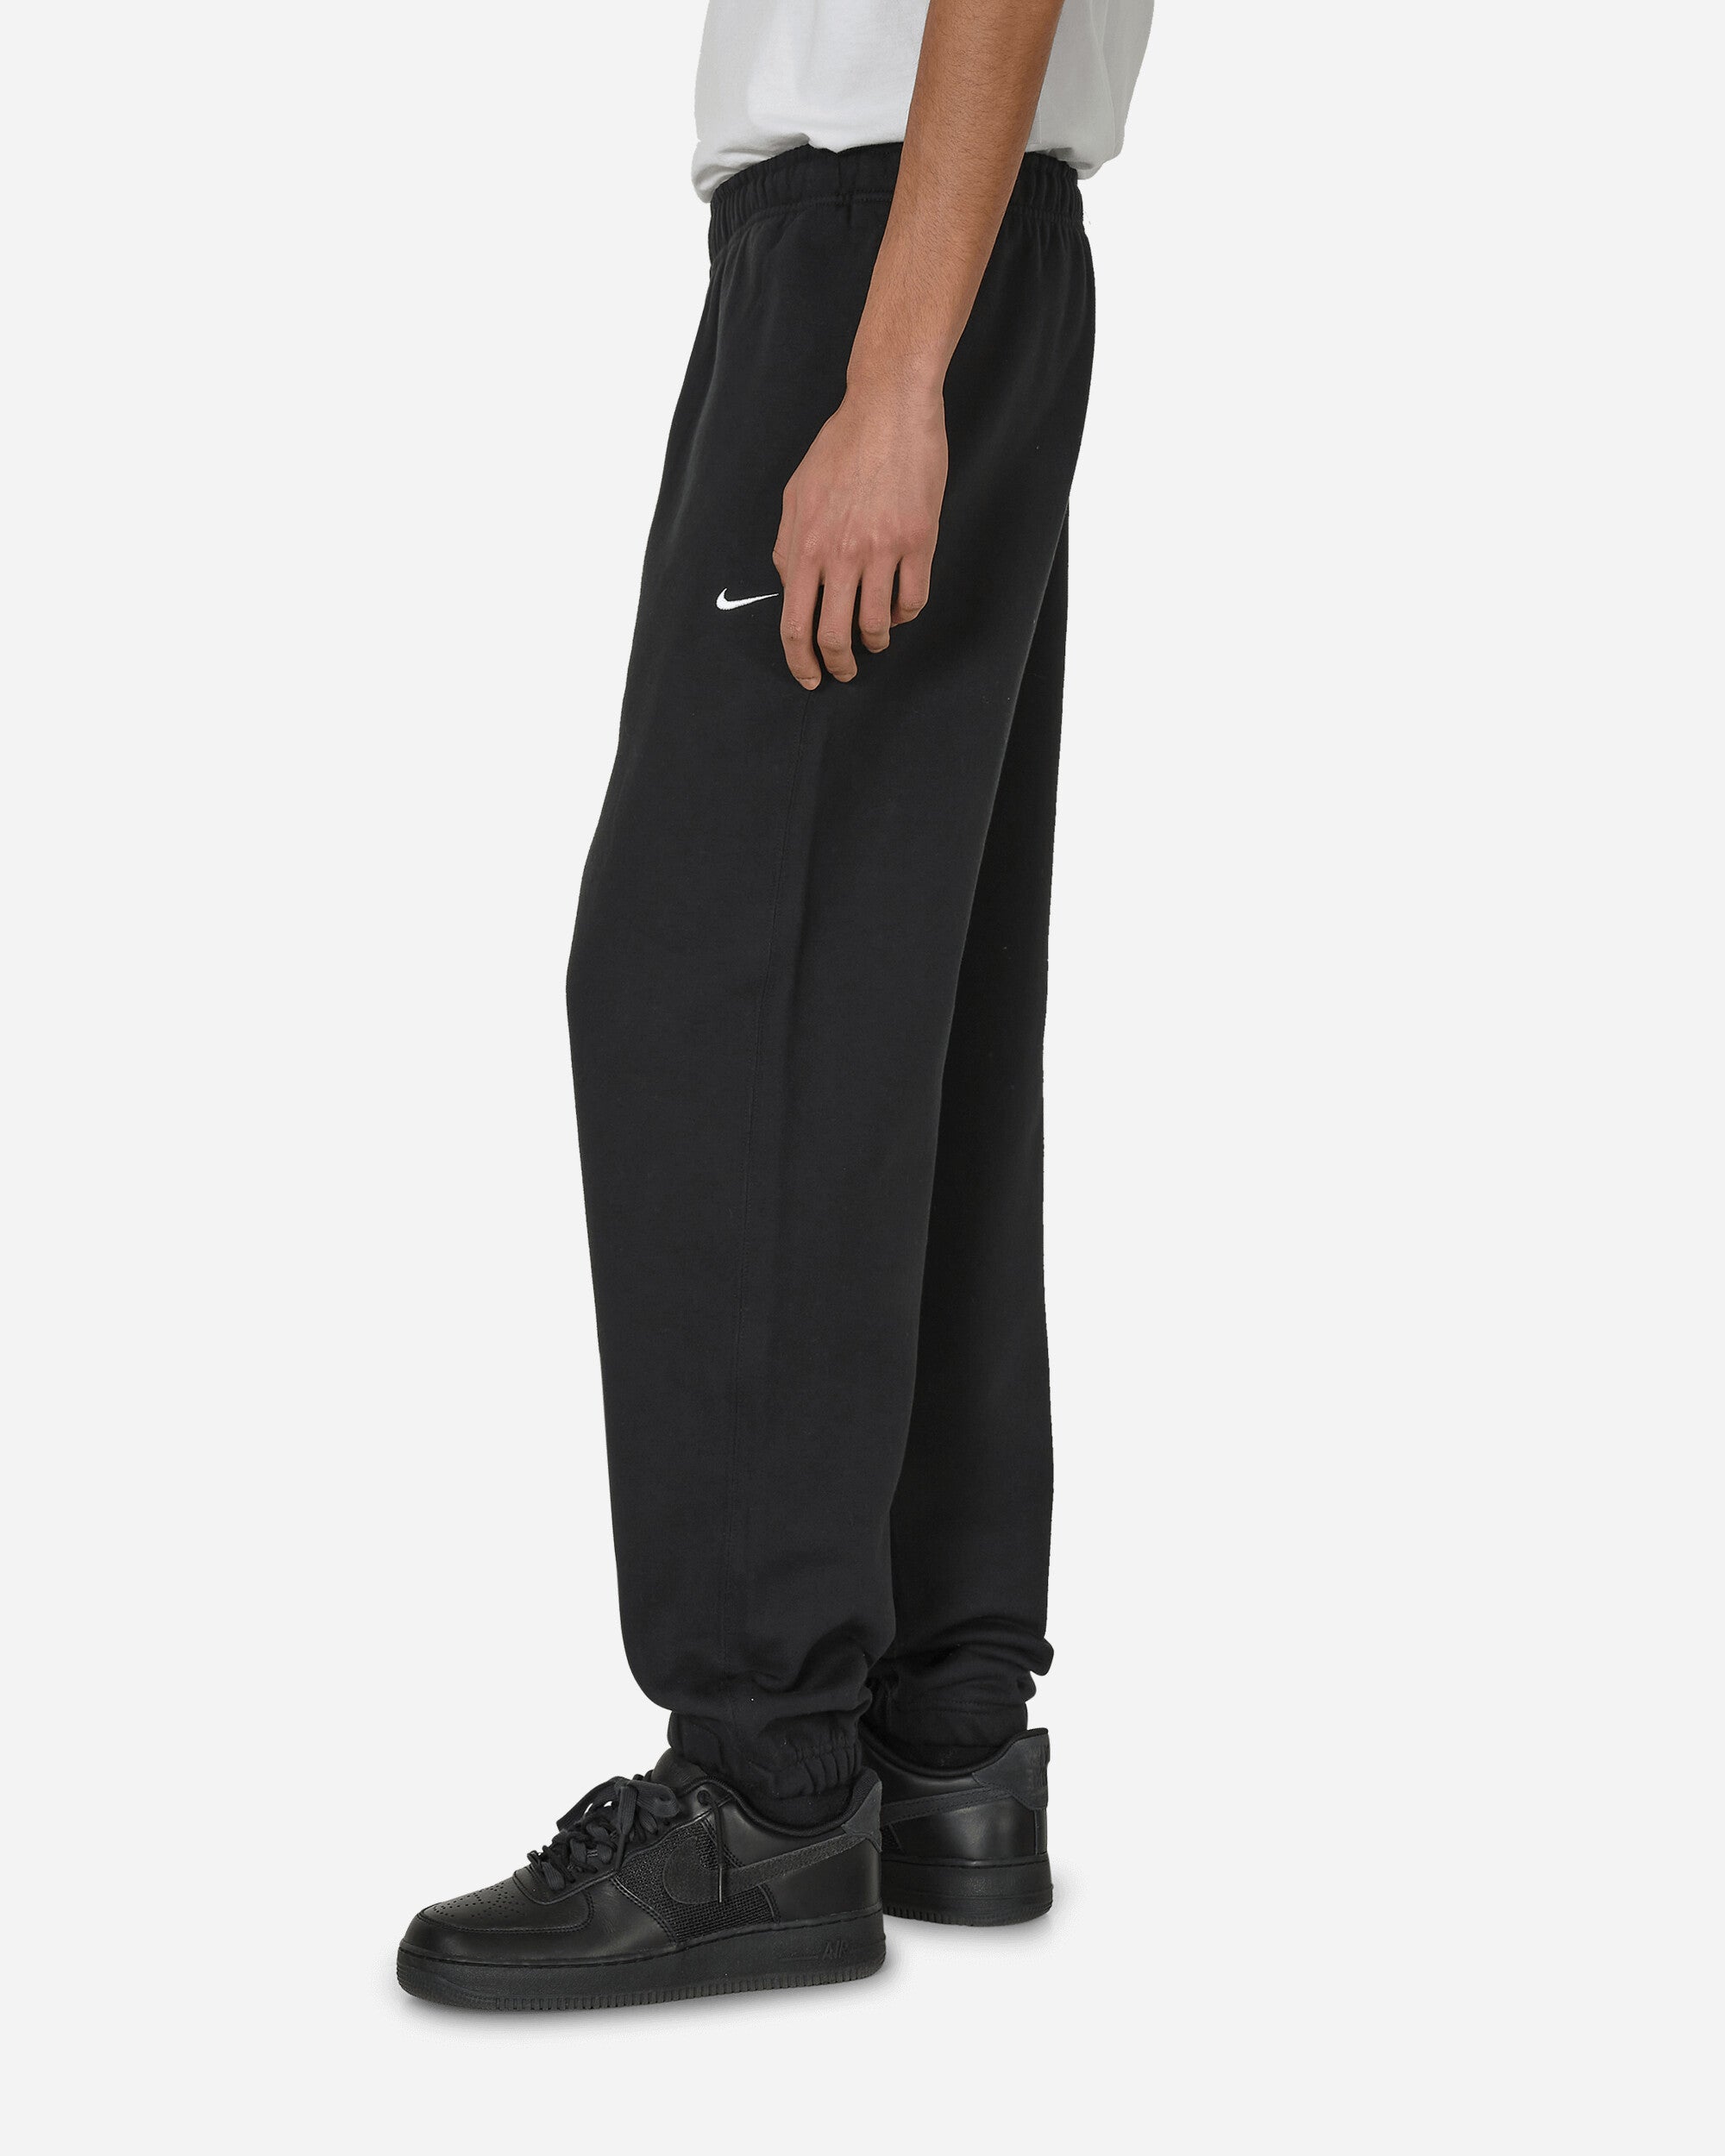 Nike M Nk Solo Swsh Flc Cf Pant Black/White Pants Sweatpants DX1364-010